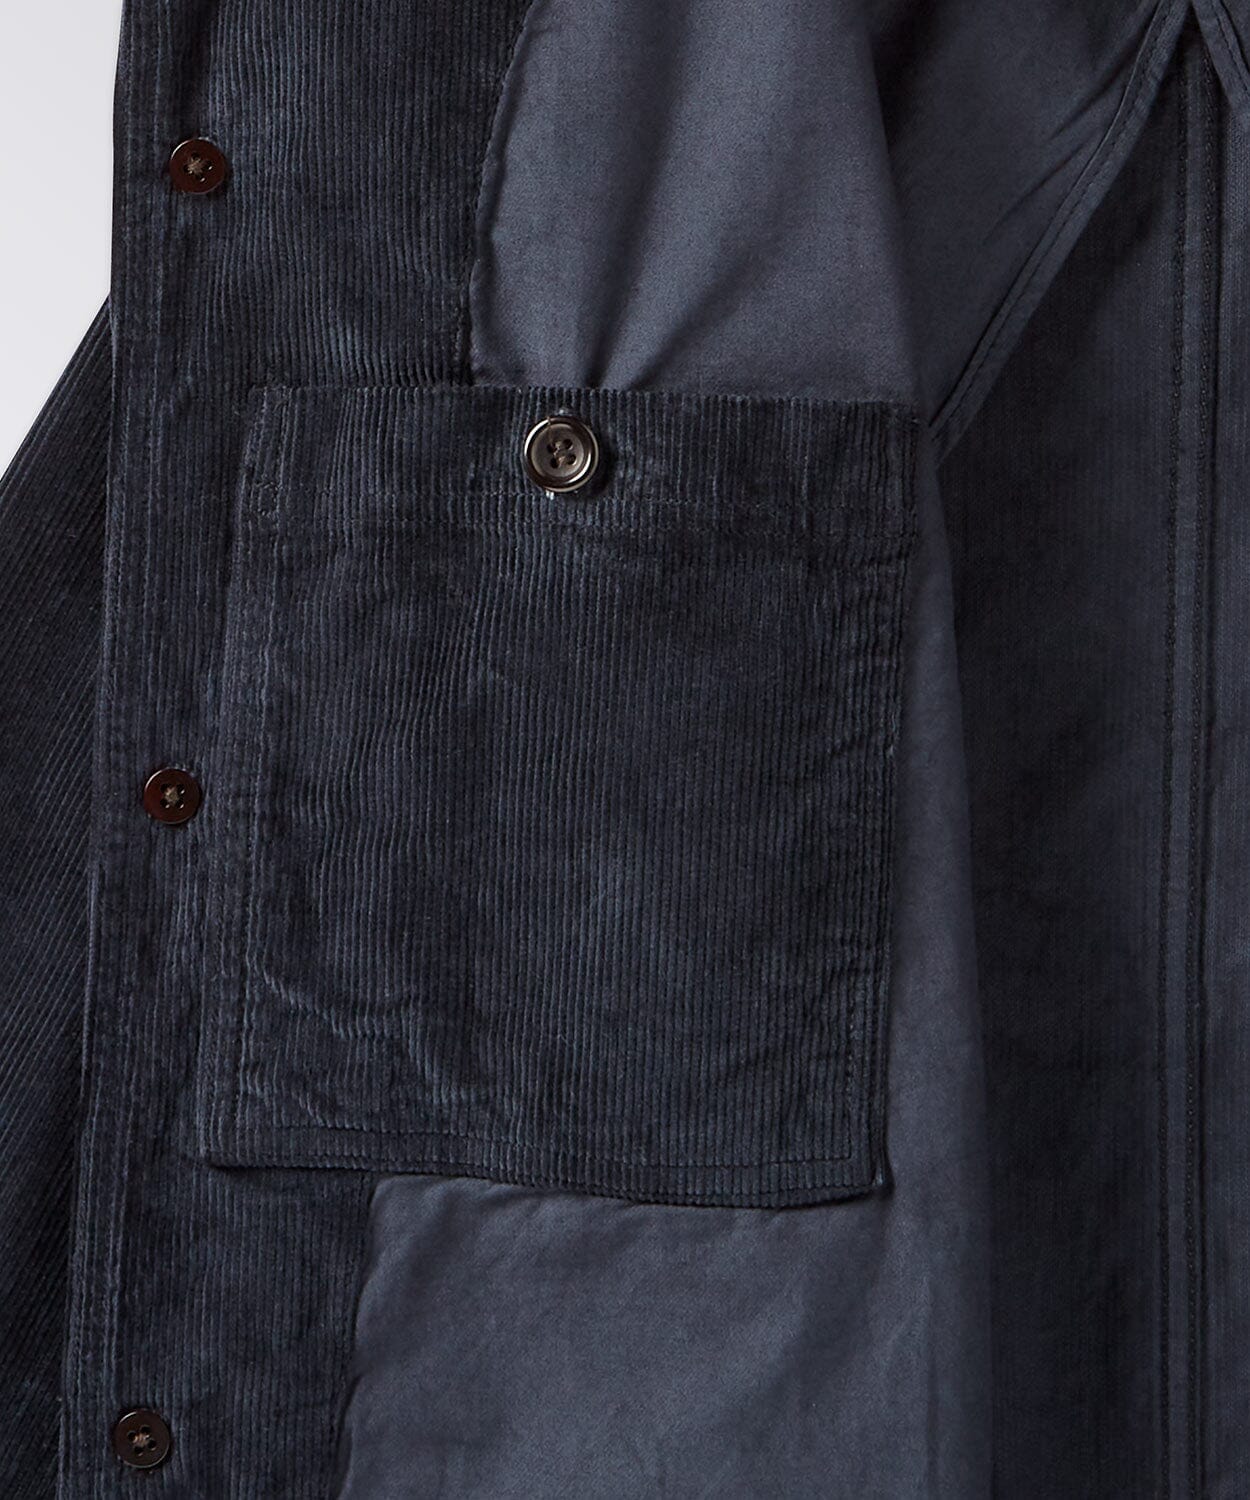 pocket of a mens corduroy coat